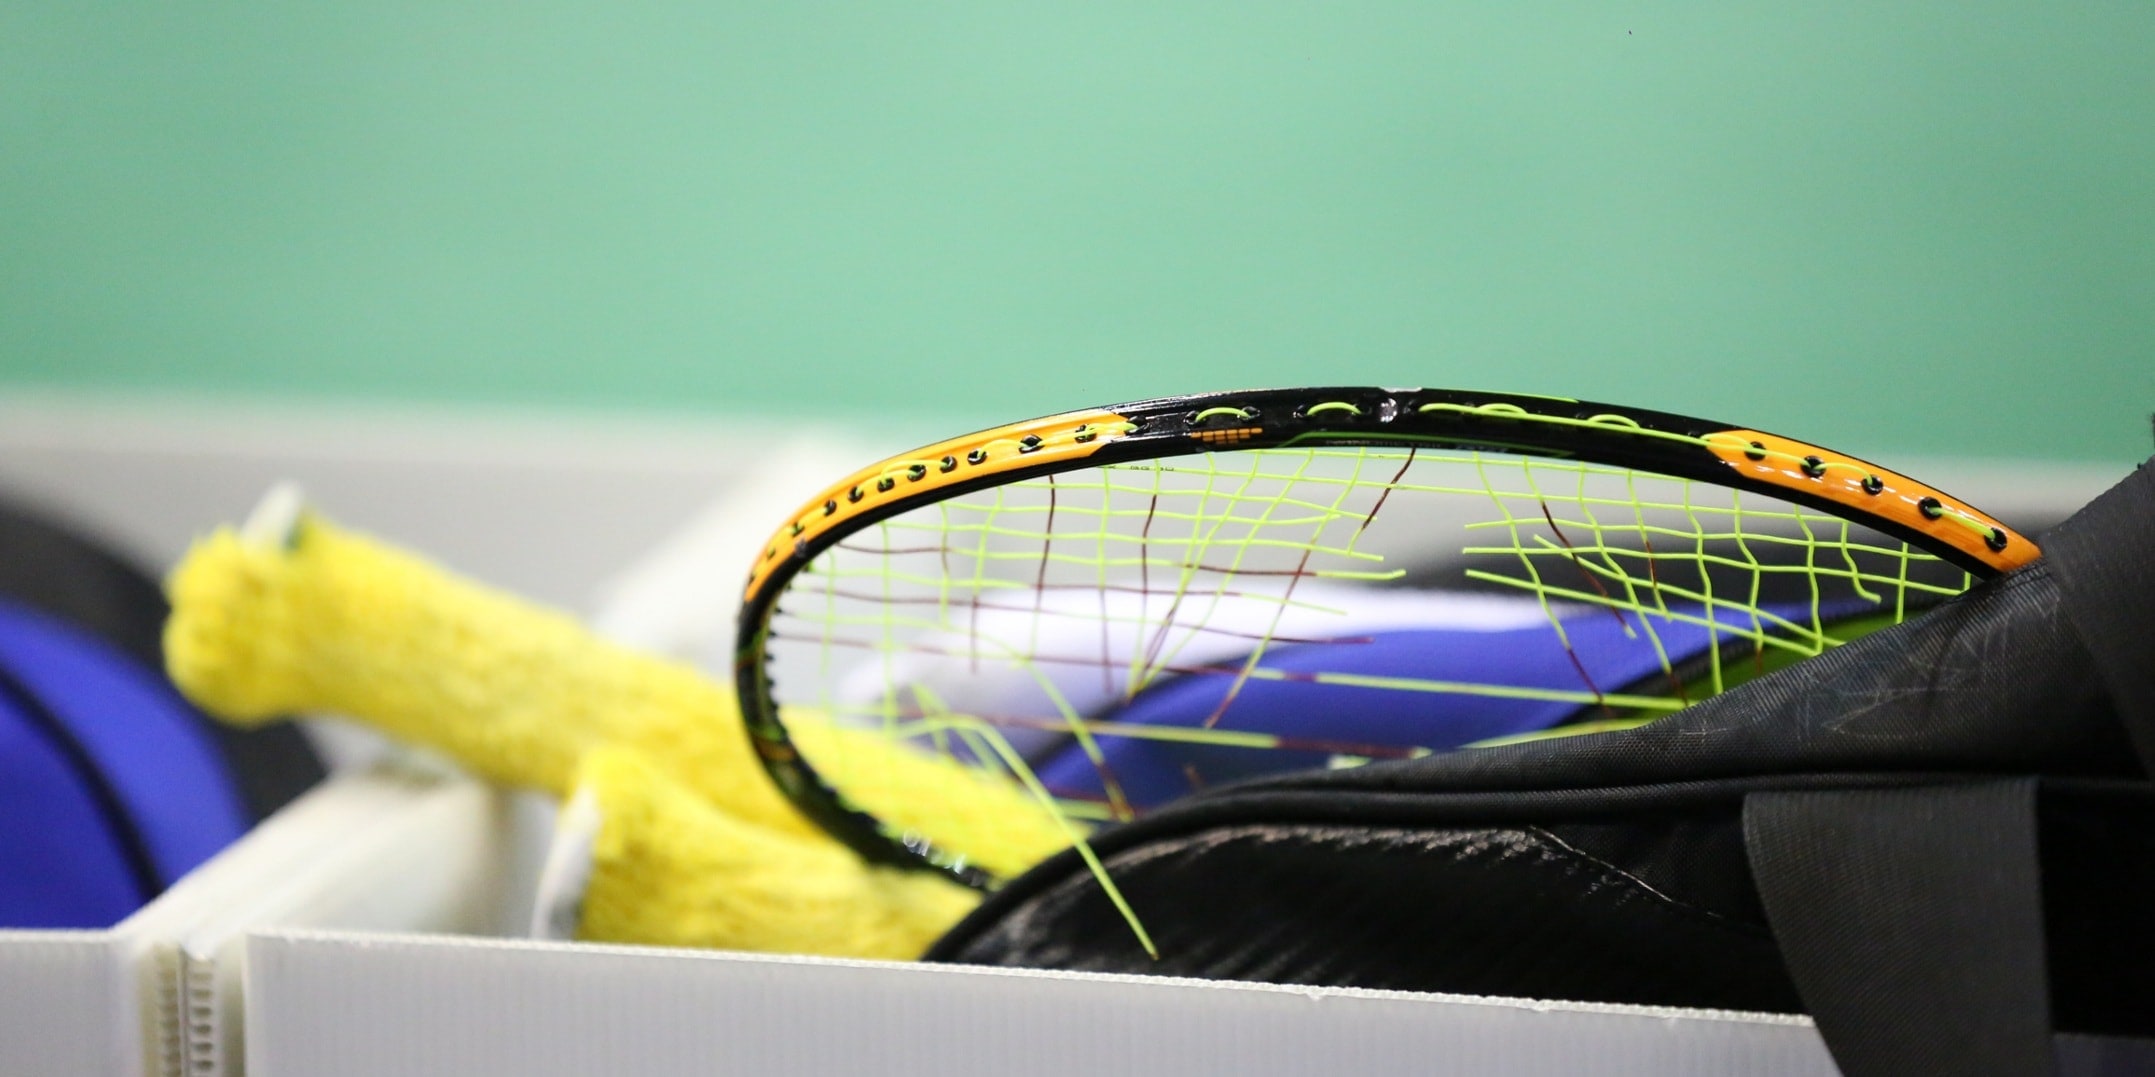 Avis / test - Kawasaki Badminton sac imperméable à l'eau simple épaule courge  raquette raquette de Tennis sacs de sport peuvent [79F41F5] - AUCUNE - Prix